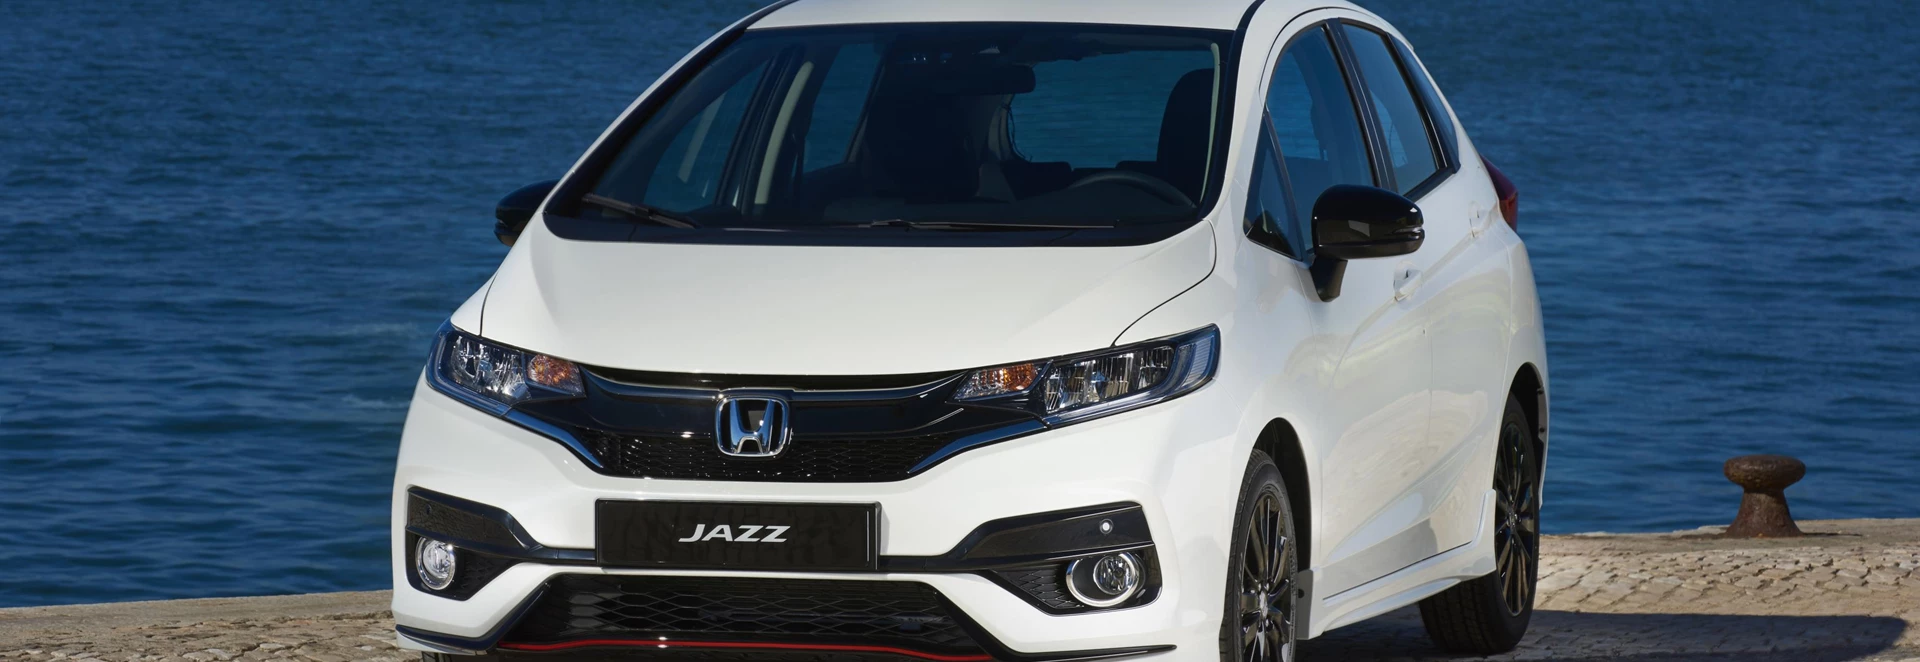 Honda Jazz 2018 facelift adds new petrol engine 